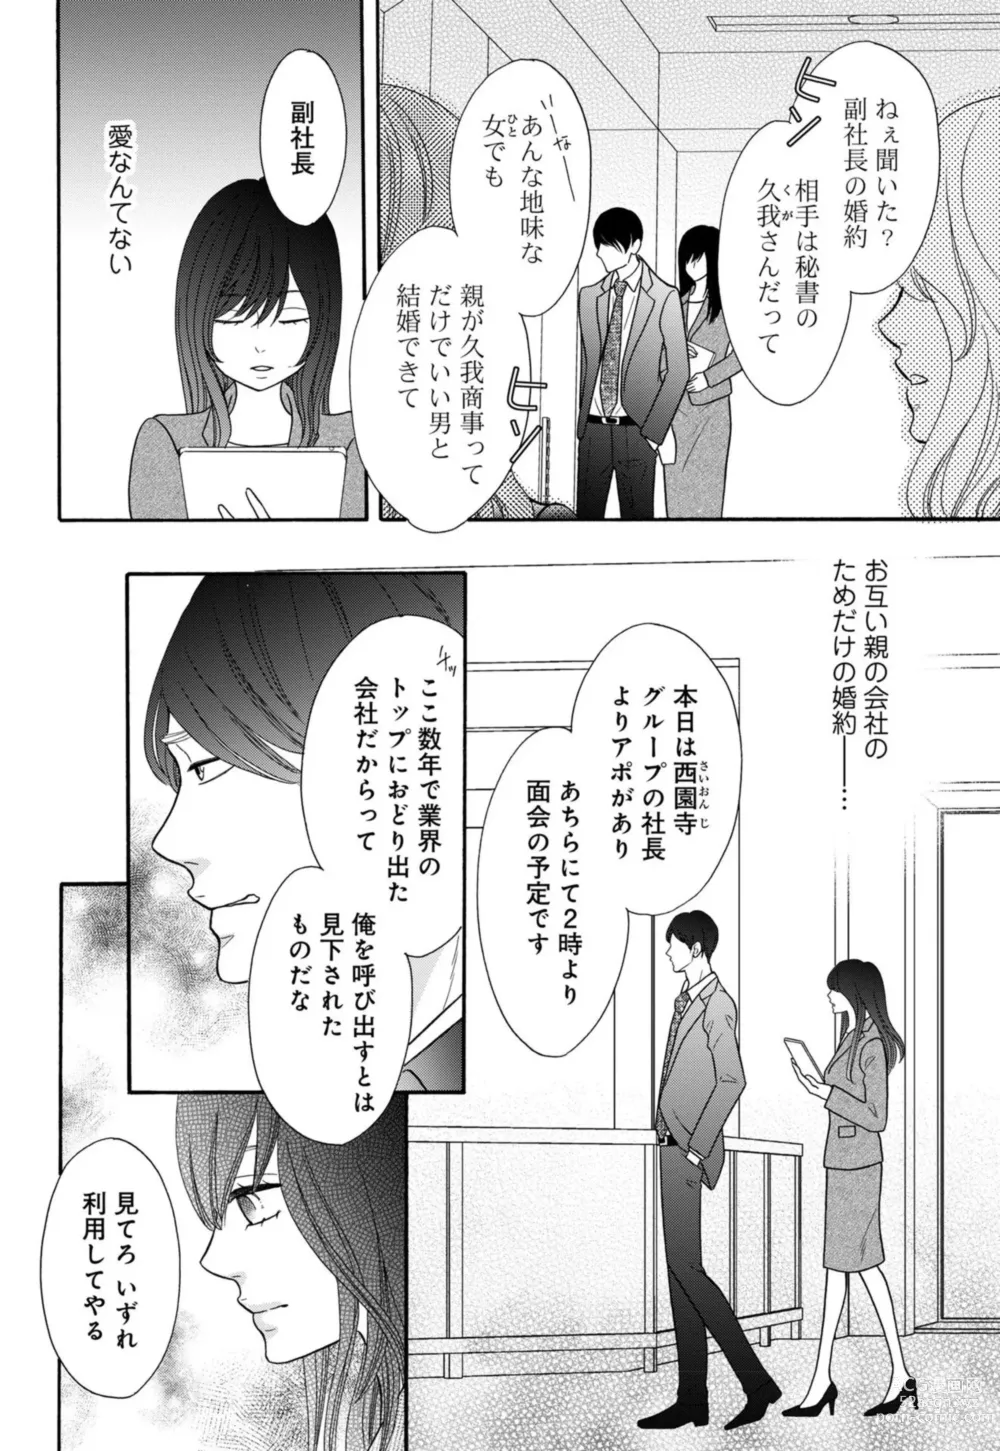 Page 6 of manga `Netotte Yaru yo Moto Kare Kara 8 Toshikoshi no Shūchaku ai 1